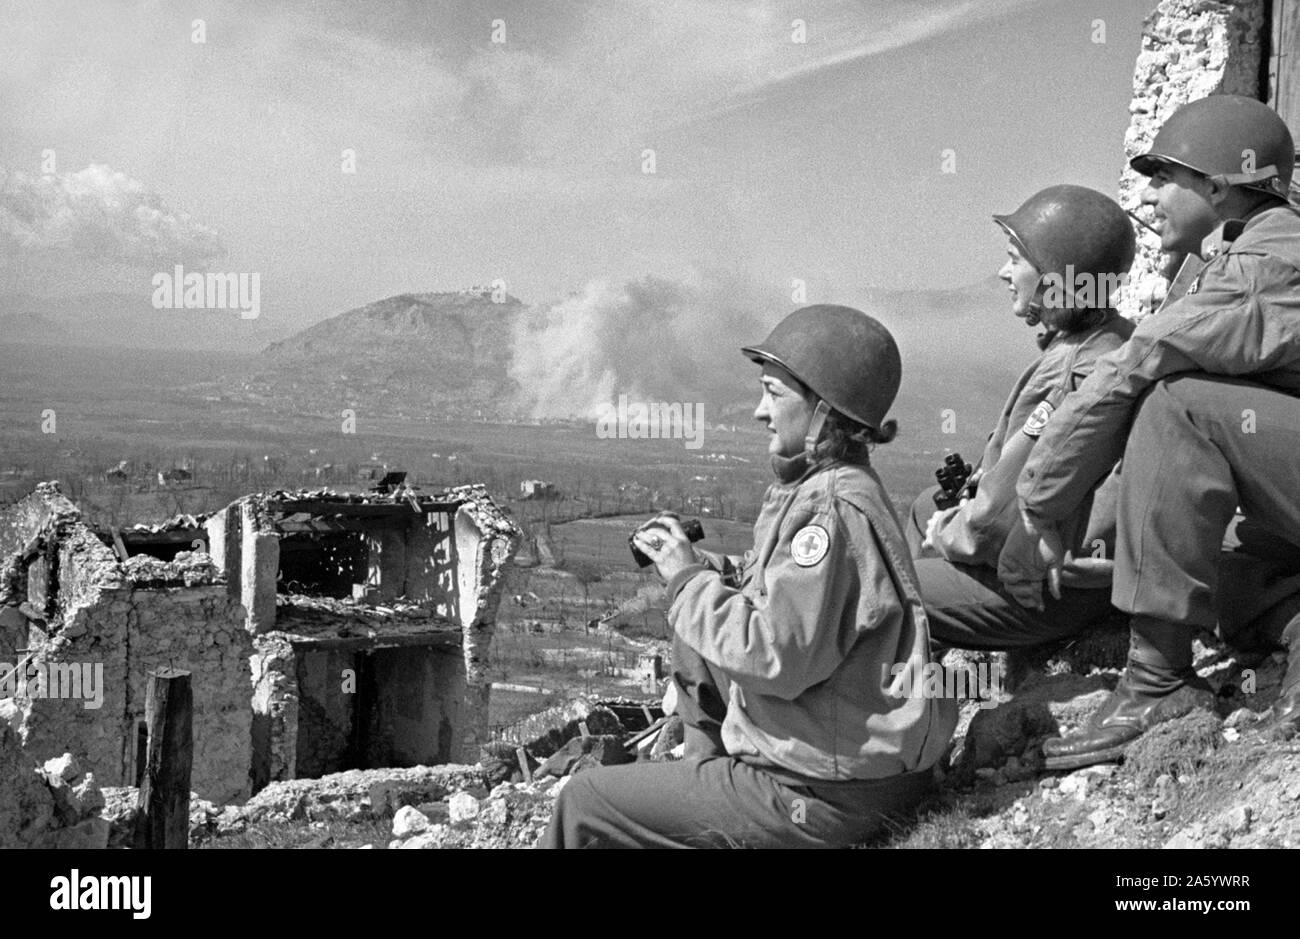 Fotografia della Croce Rossa di infermieri a guardare le prime fasi della battaglia di Monte Cassino, parte della seconda guerra mondiale la campagna italiana. Datata 1944 Foto Stock